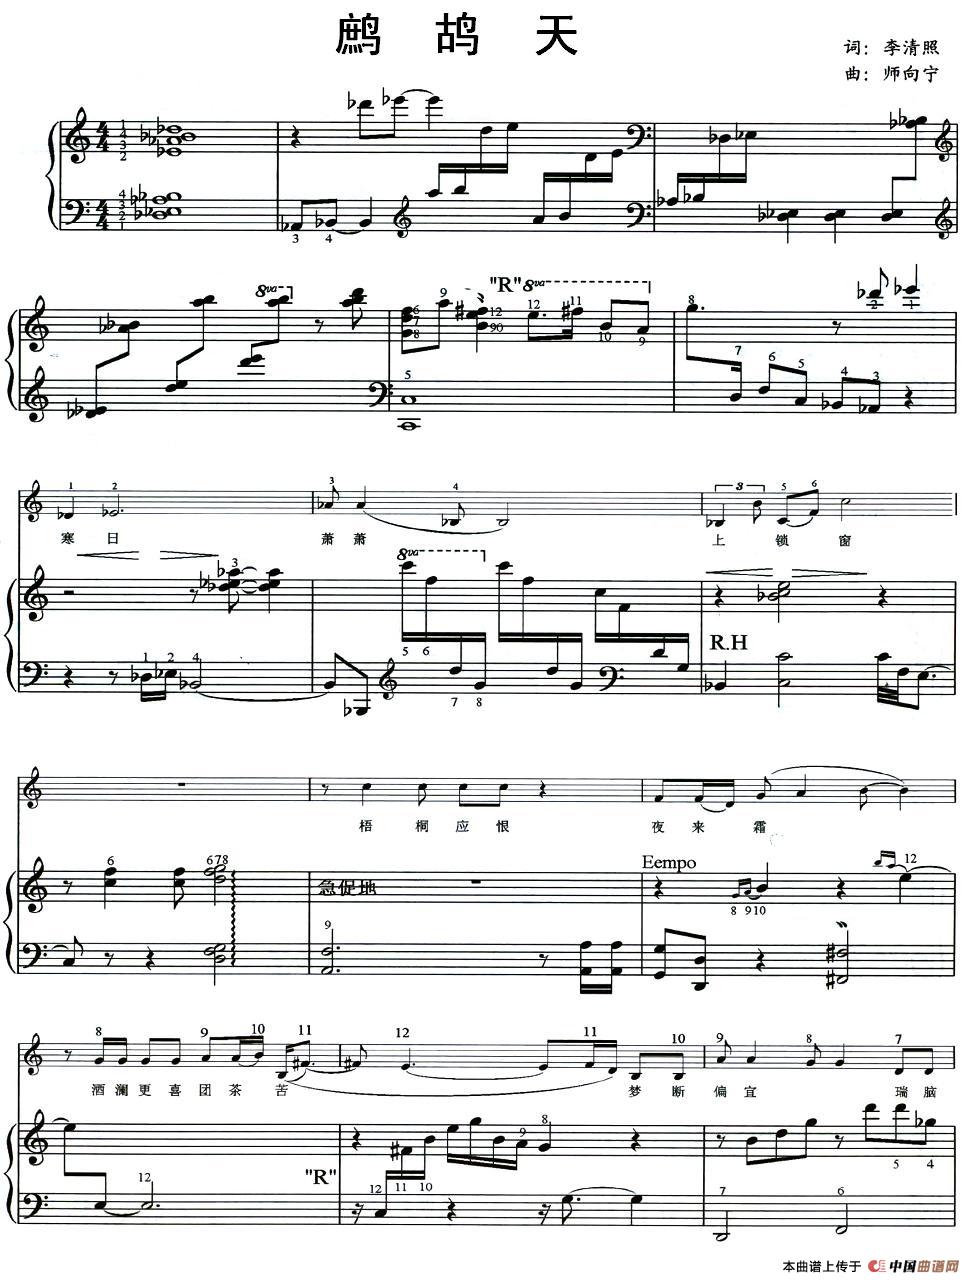 《鹧鸪天》钢琴曲谱图分享